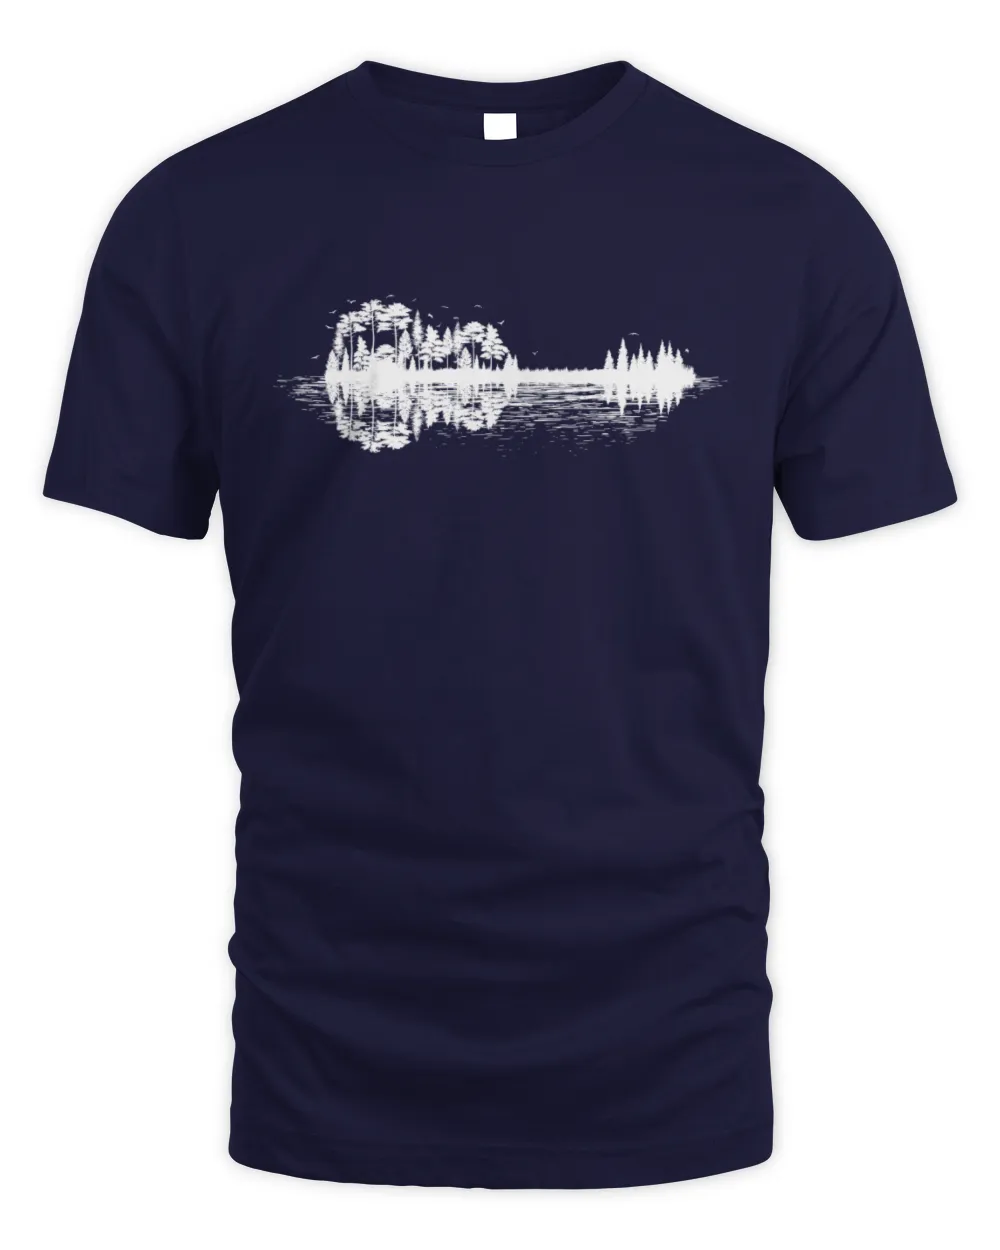 Nature Guitar T-shirt, Musician Music Lover, Band Tee Shirt, Country Music Guitarist Gift Tee Shirt